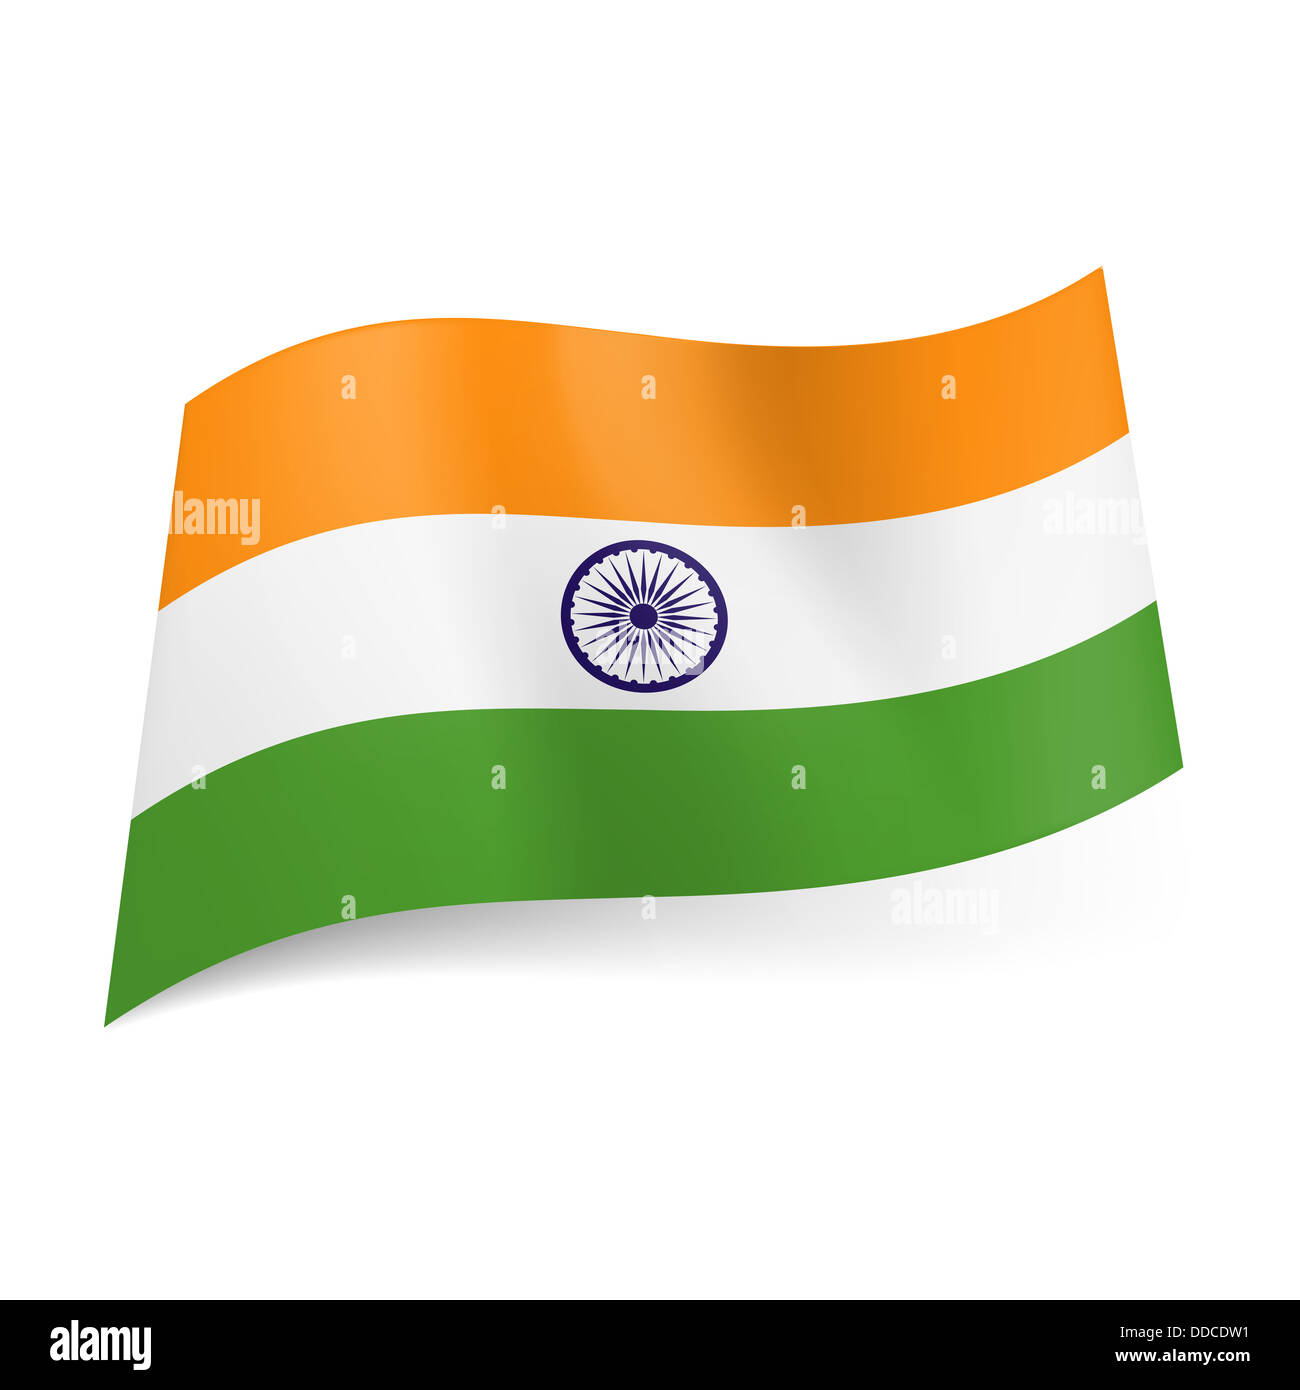 Nationalflagge von Indien: orange, weiß und grün Querstreifen mit Rad im  Zentrum Stockfotografie - Alamy